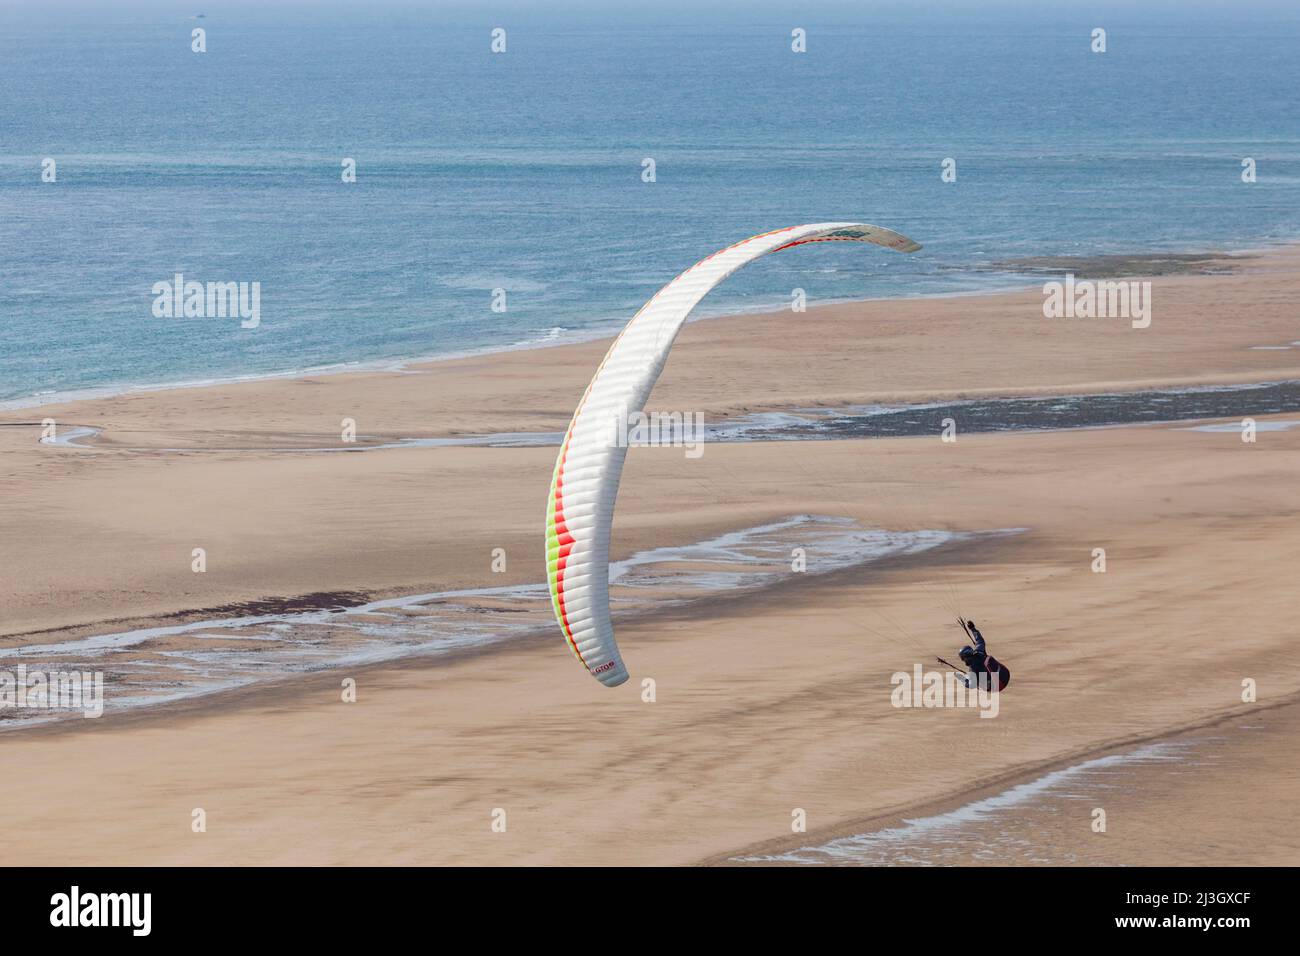 France, Manche, Cotentin, Barneville-Carteret, Cap de Carteret, Vieille Eglise beach, paragliding Stock Photo